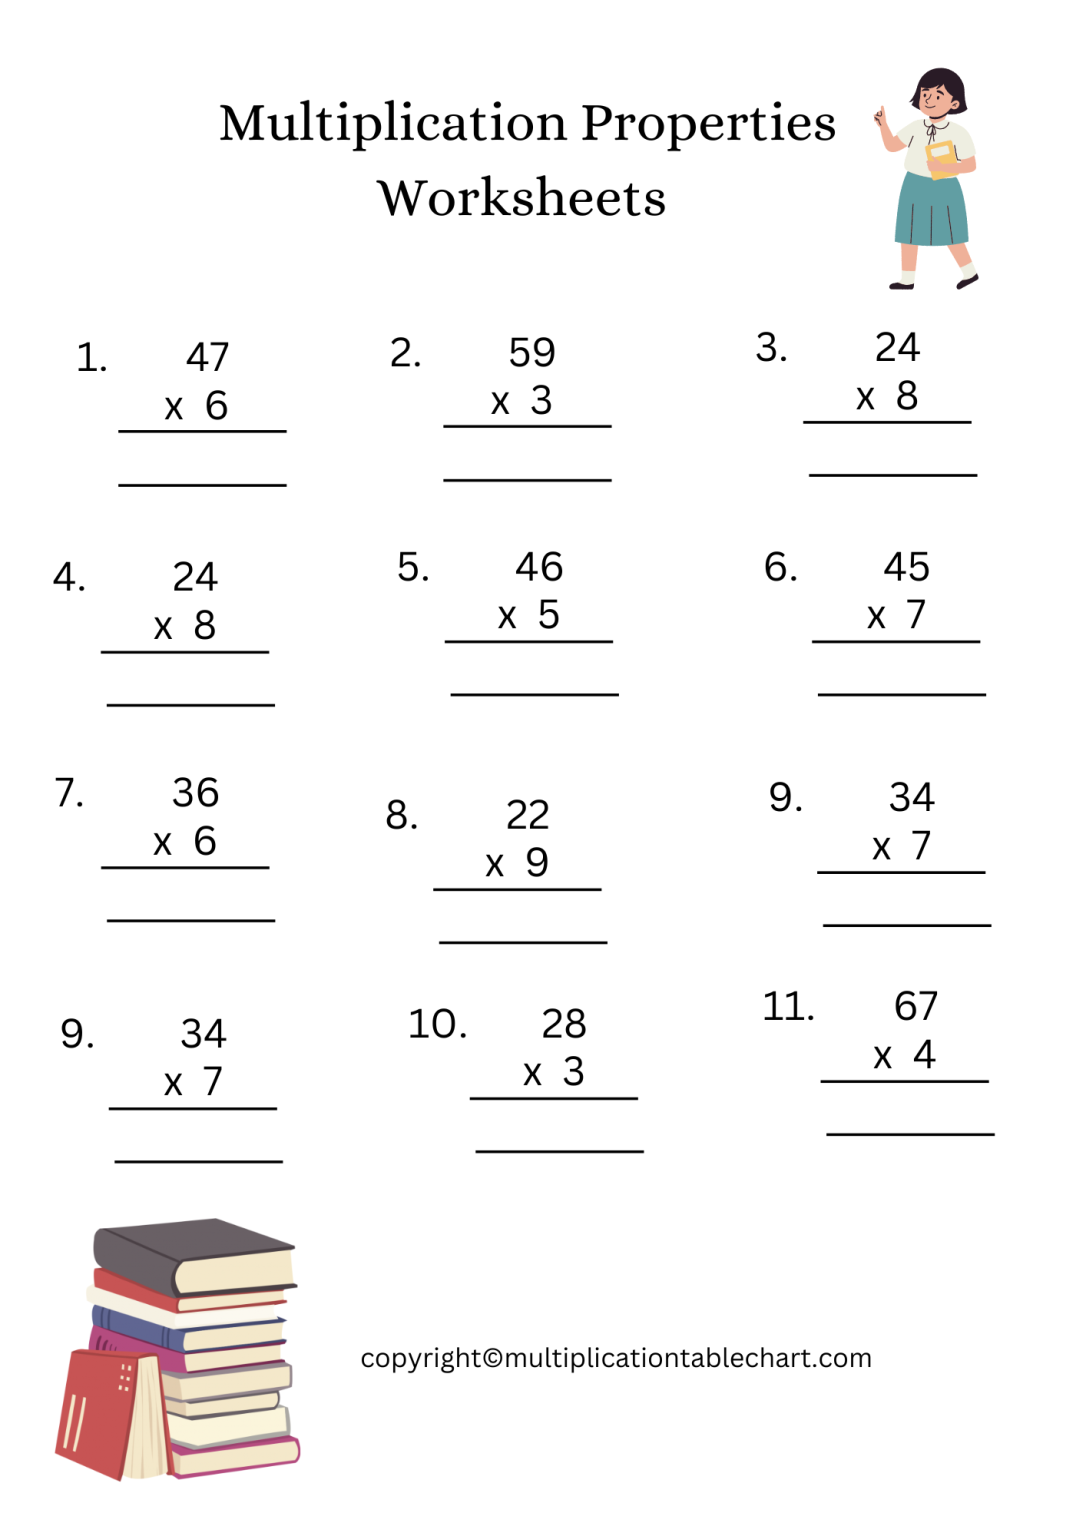 multiplication-properties-worksheets-printable-grade-3